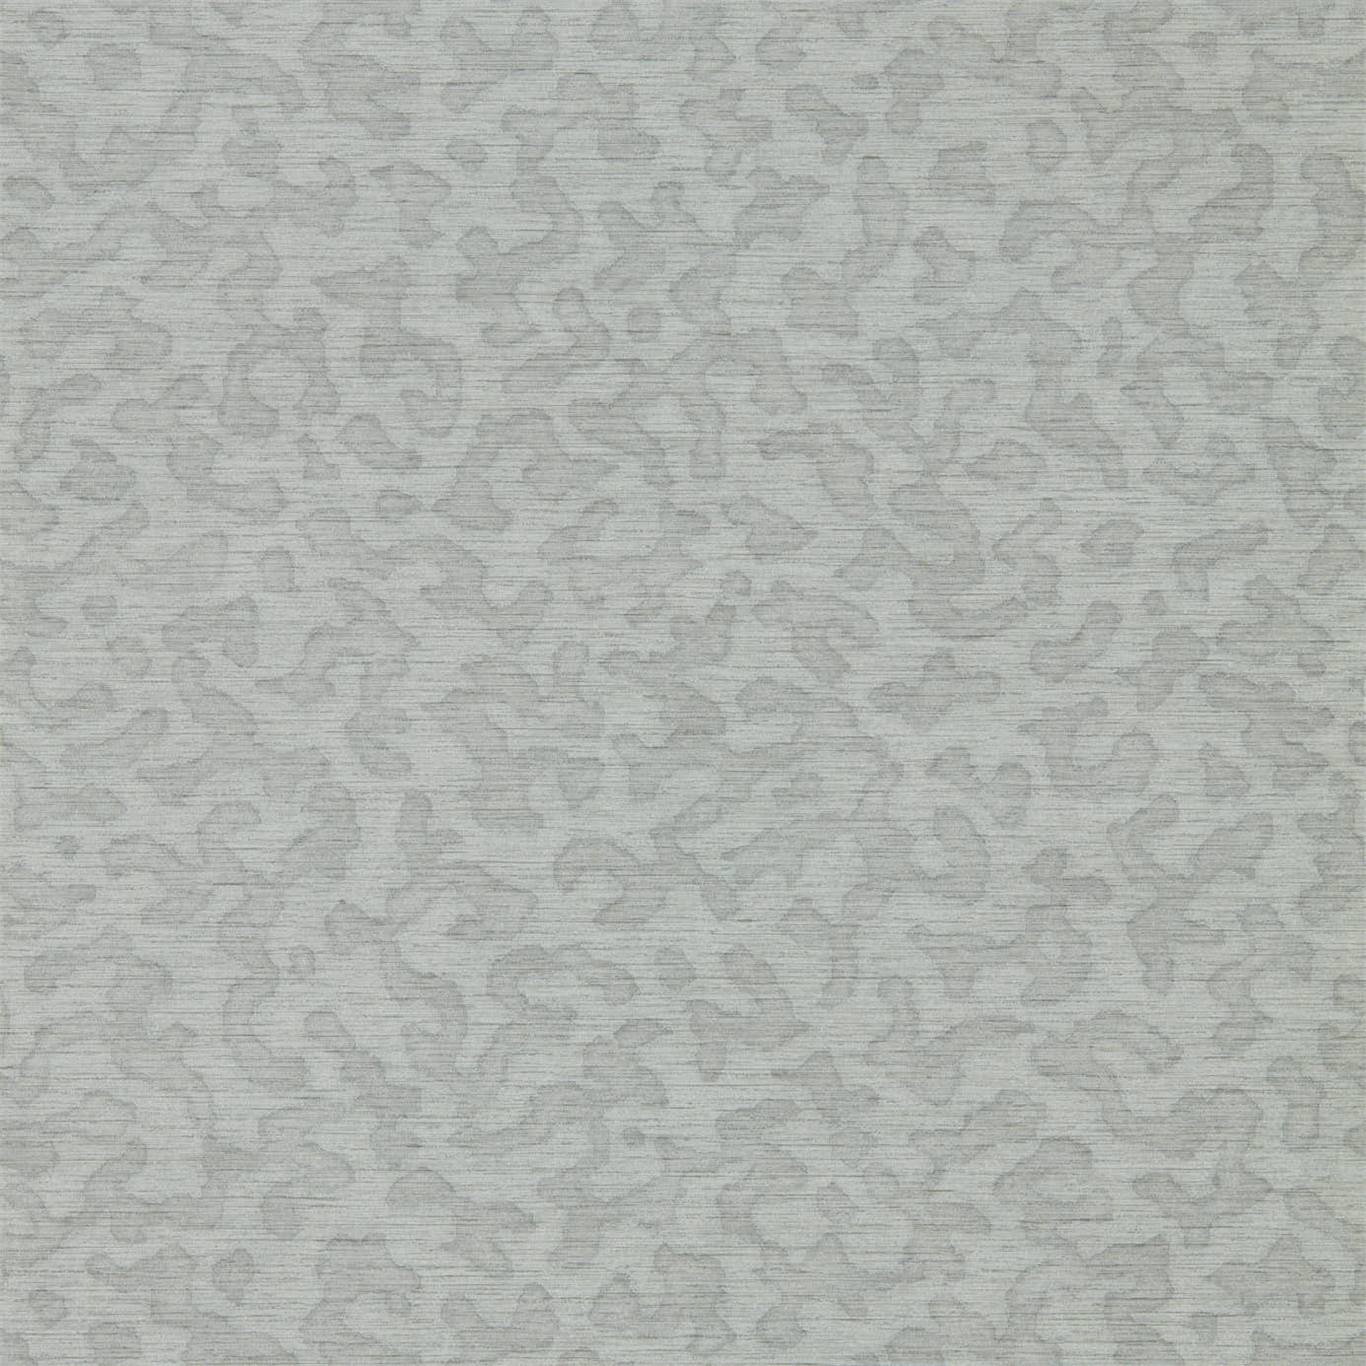 Wallpaper - Harlequin - Mirador Wallpaper -  Nakuru Seaglass